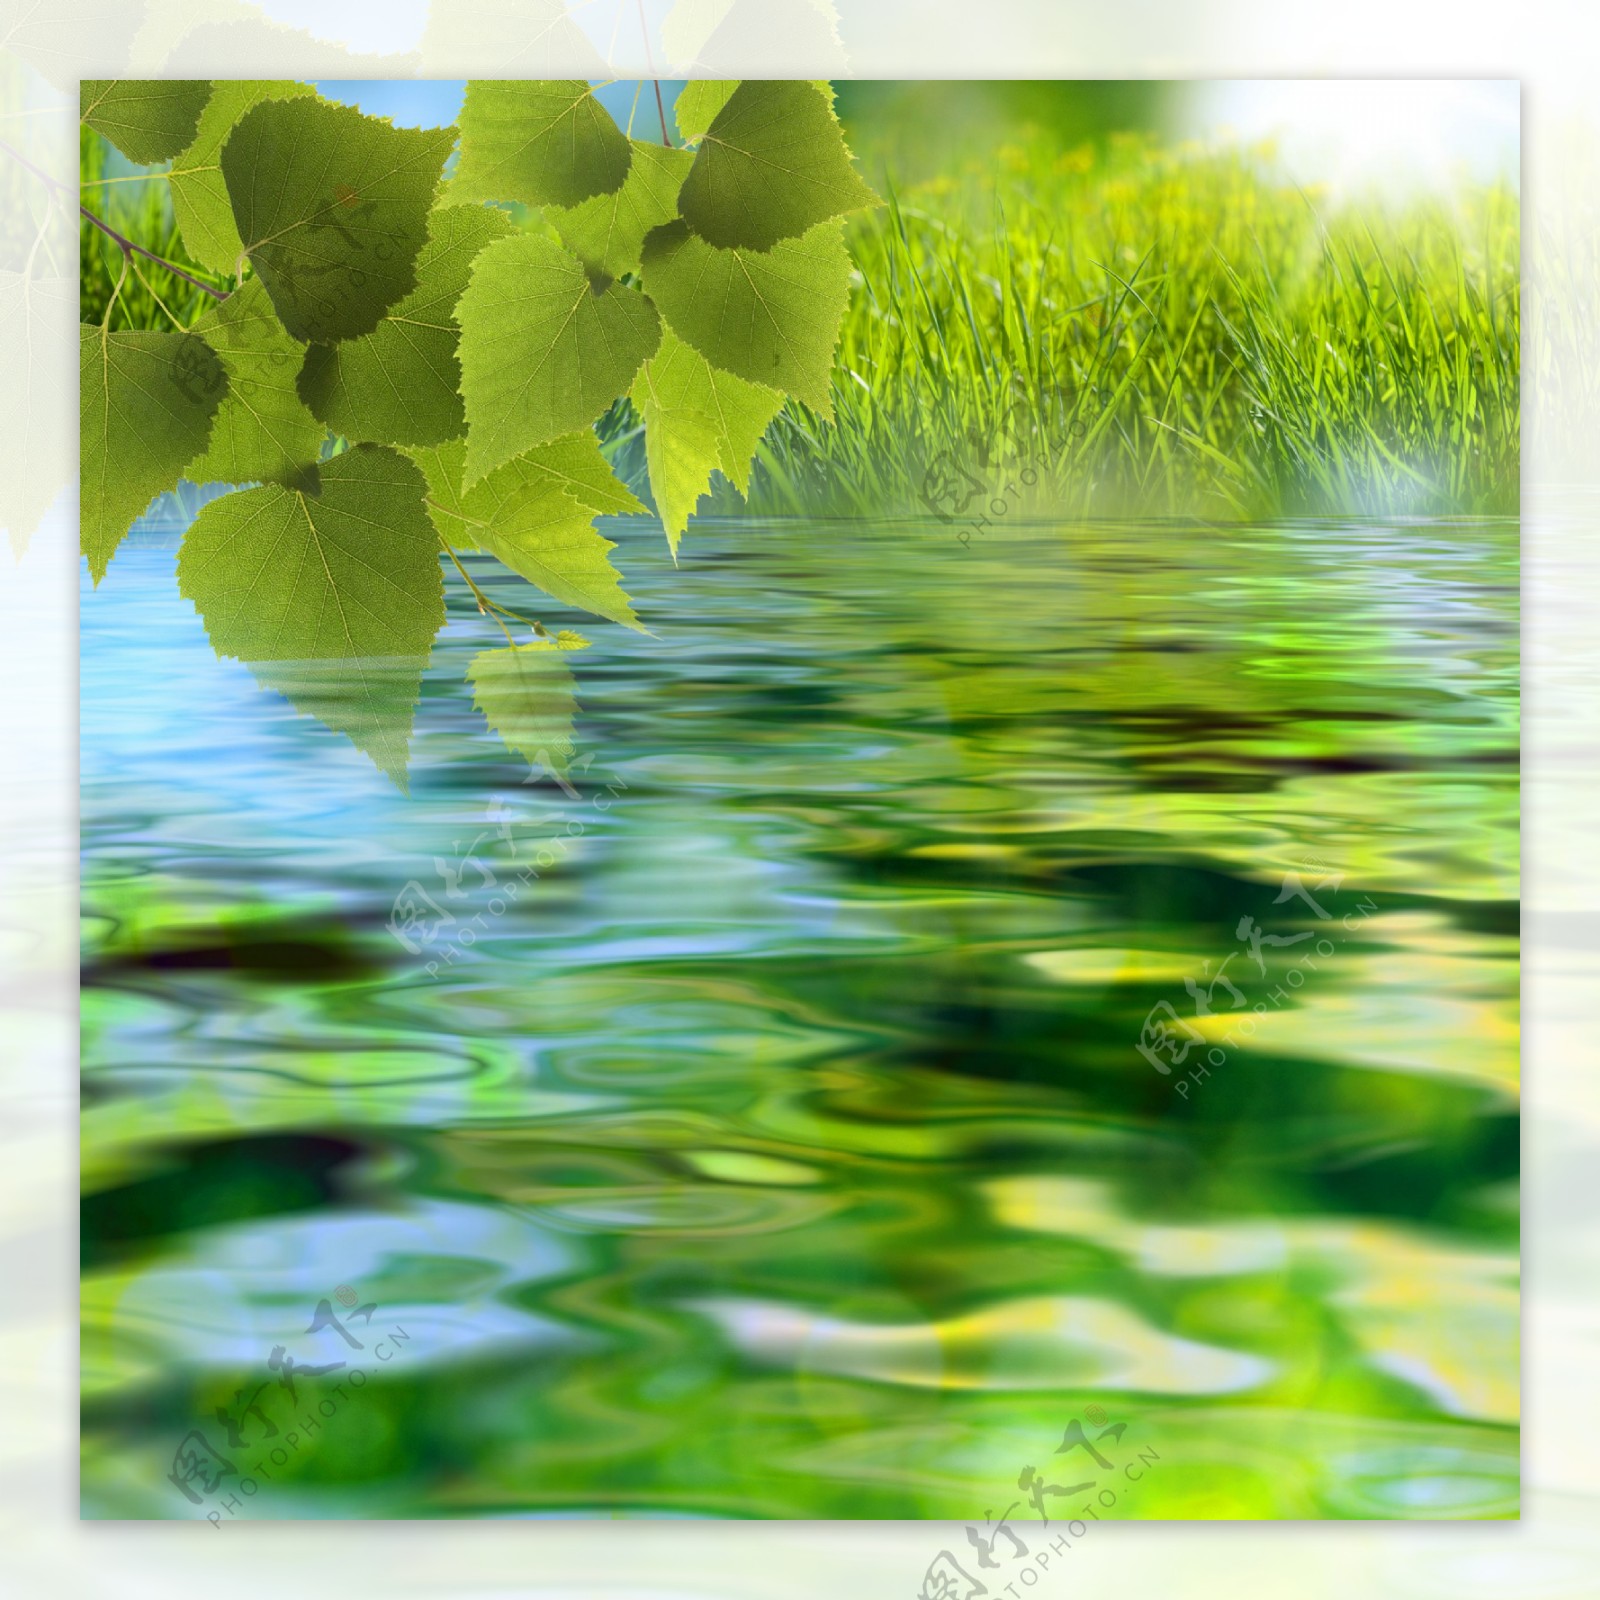 绿叶下水面摄影